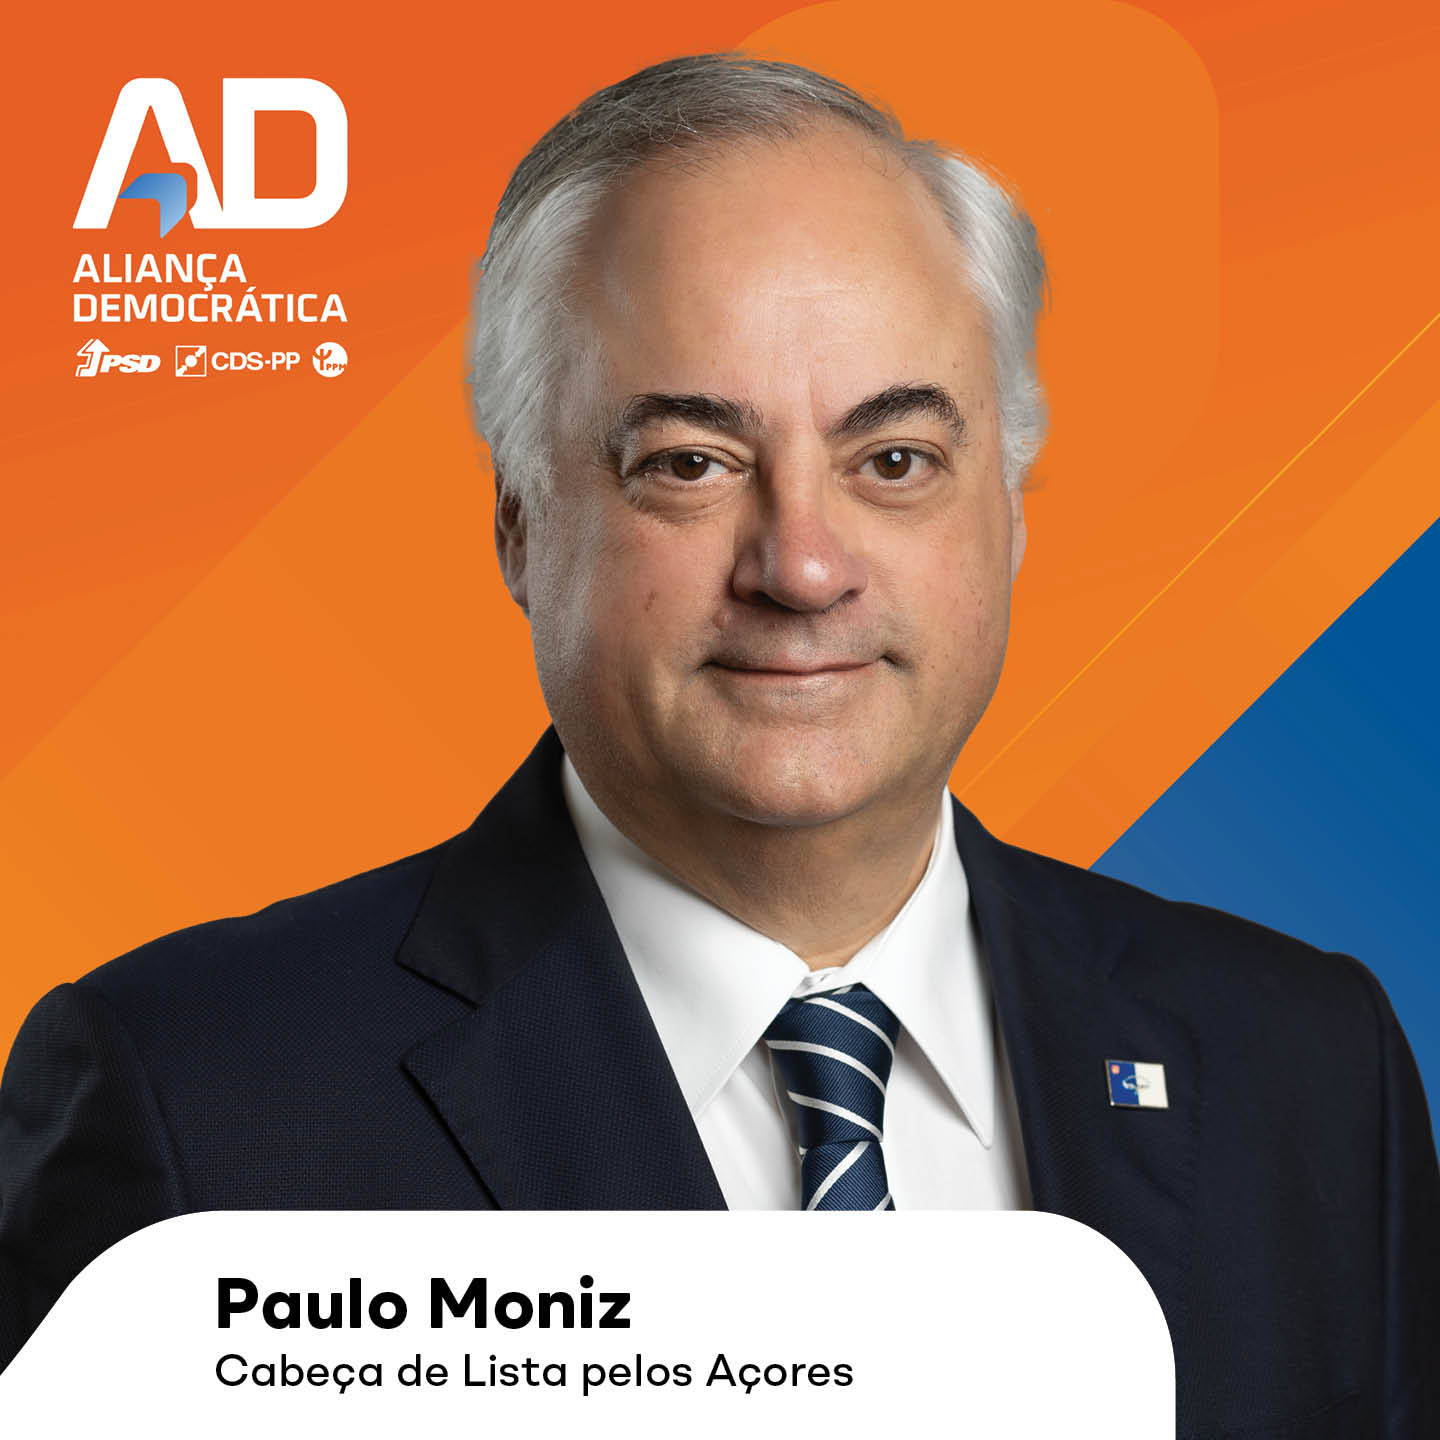 Paulo Moniz